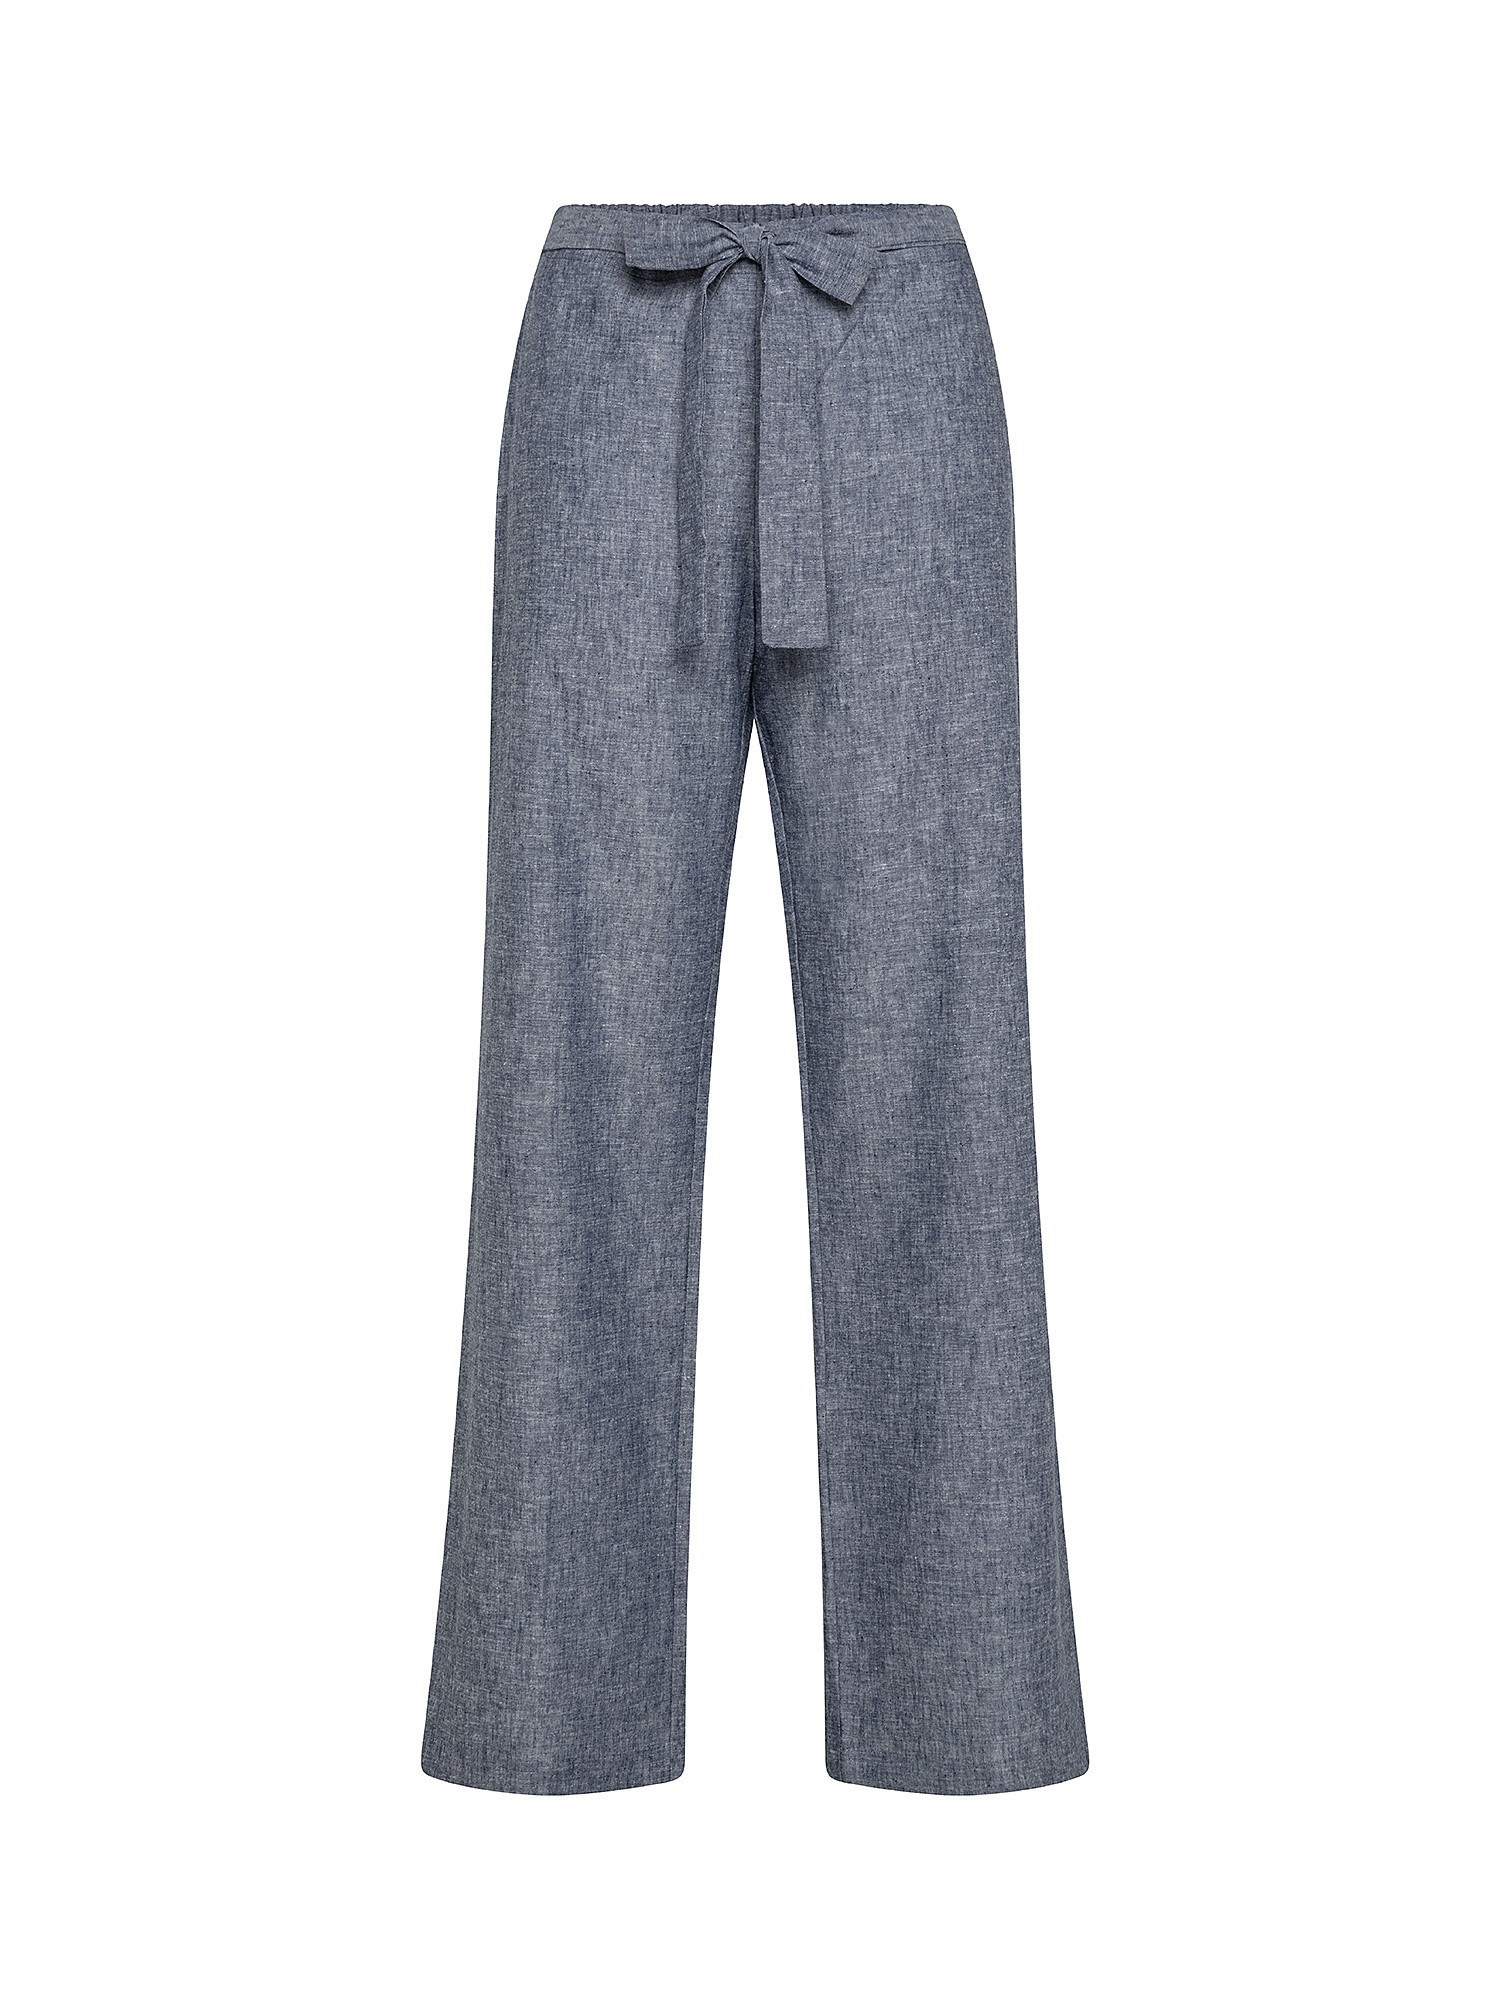 Pantalone con cintura in tessuto, Denim, large image number 0